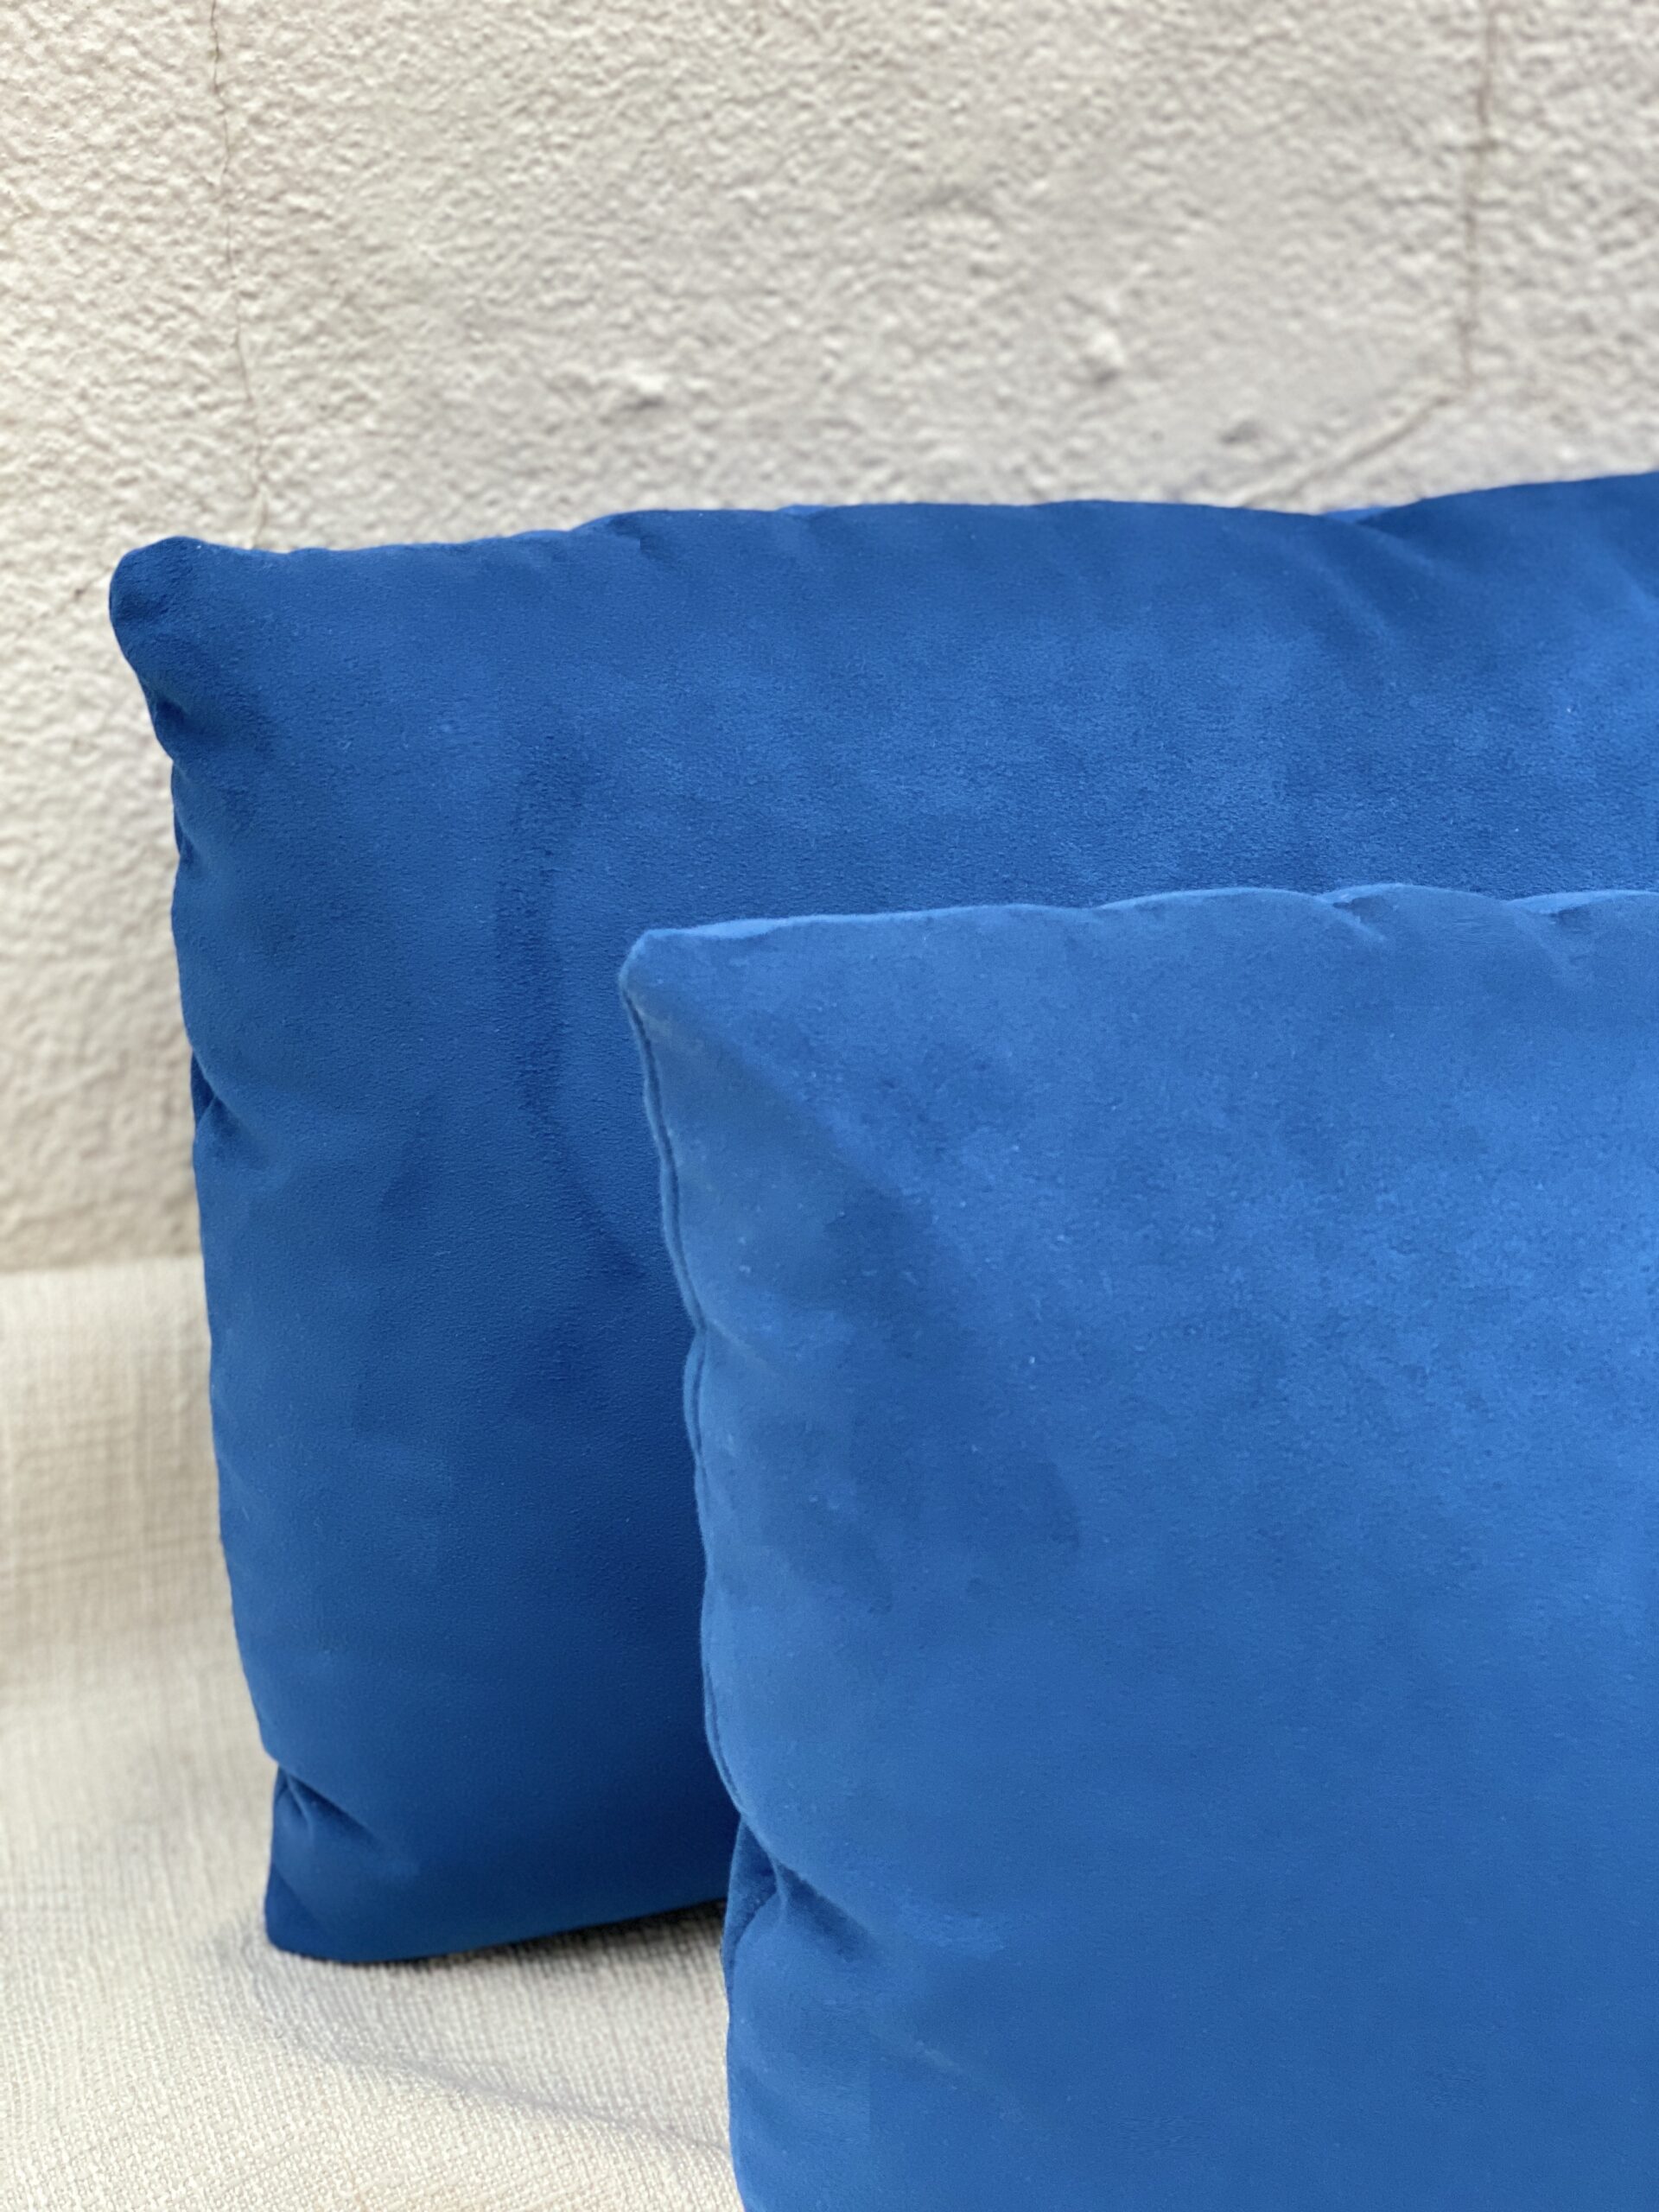 Kravet Ultrasuede Pillows